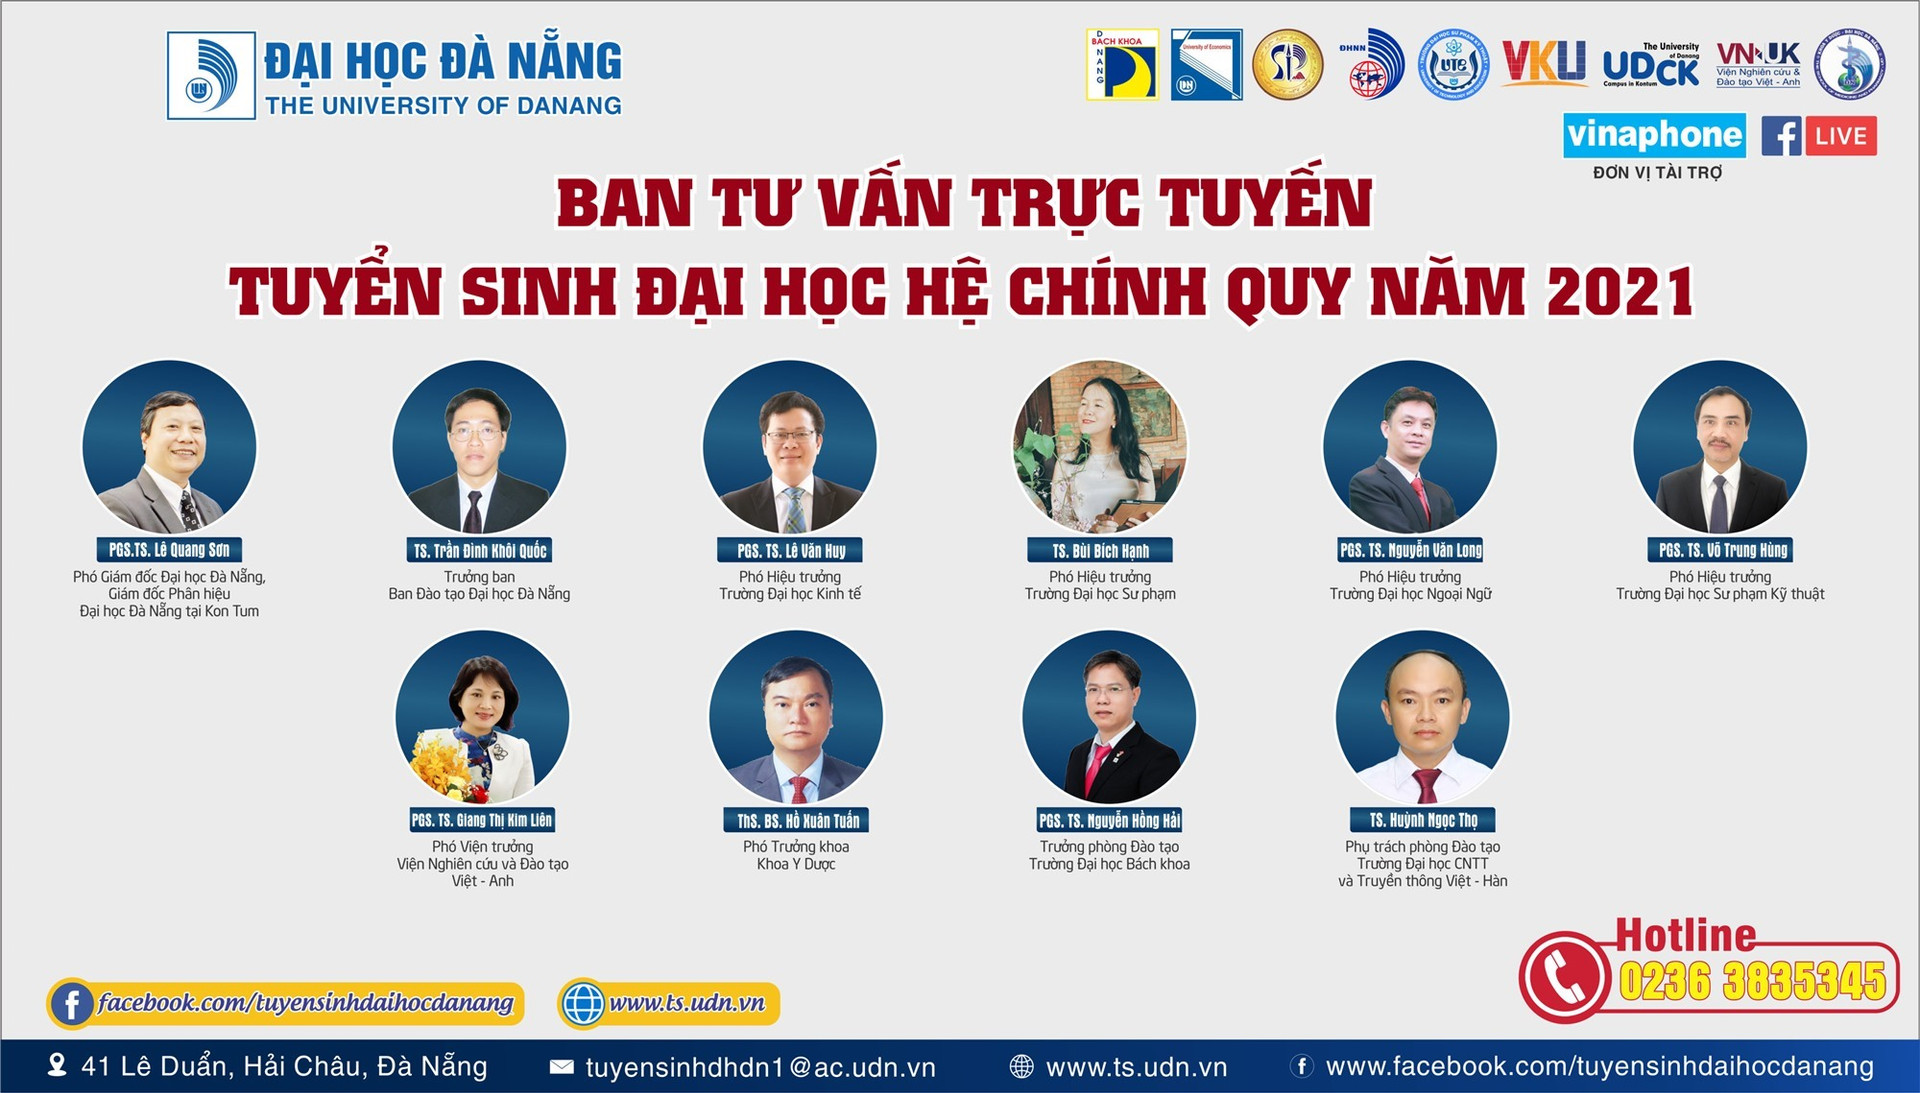 Ban tư vấn trực tuyến tuyển sinh Đại học Đà Nẵng năm 2021. Ảnh NĐ